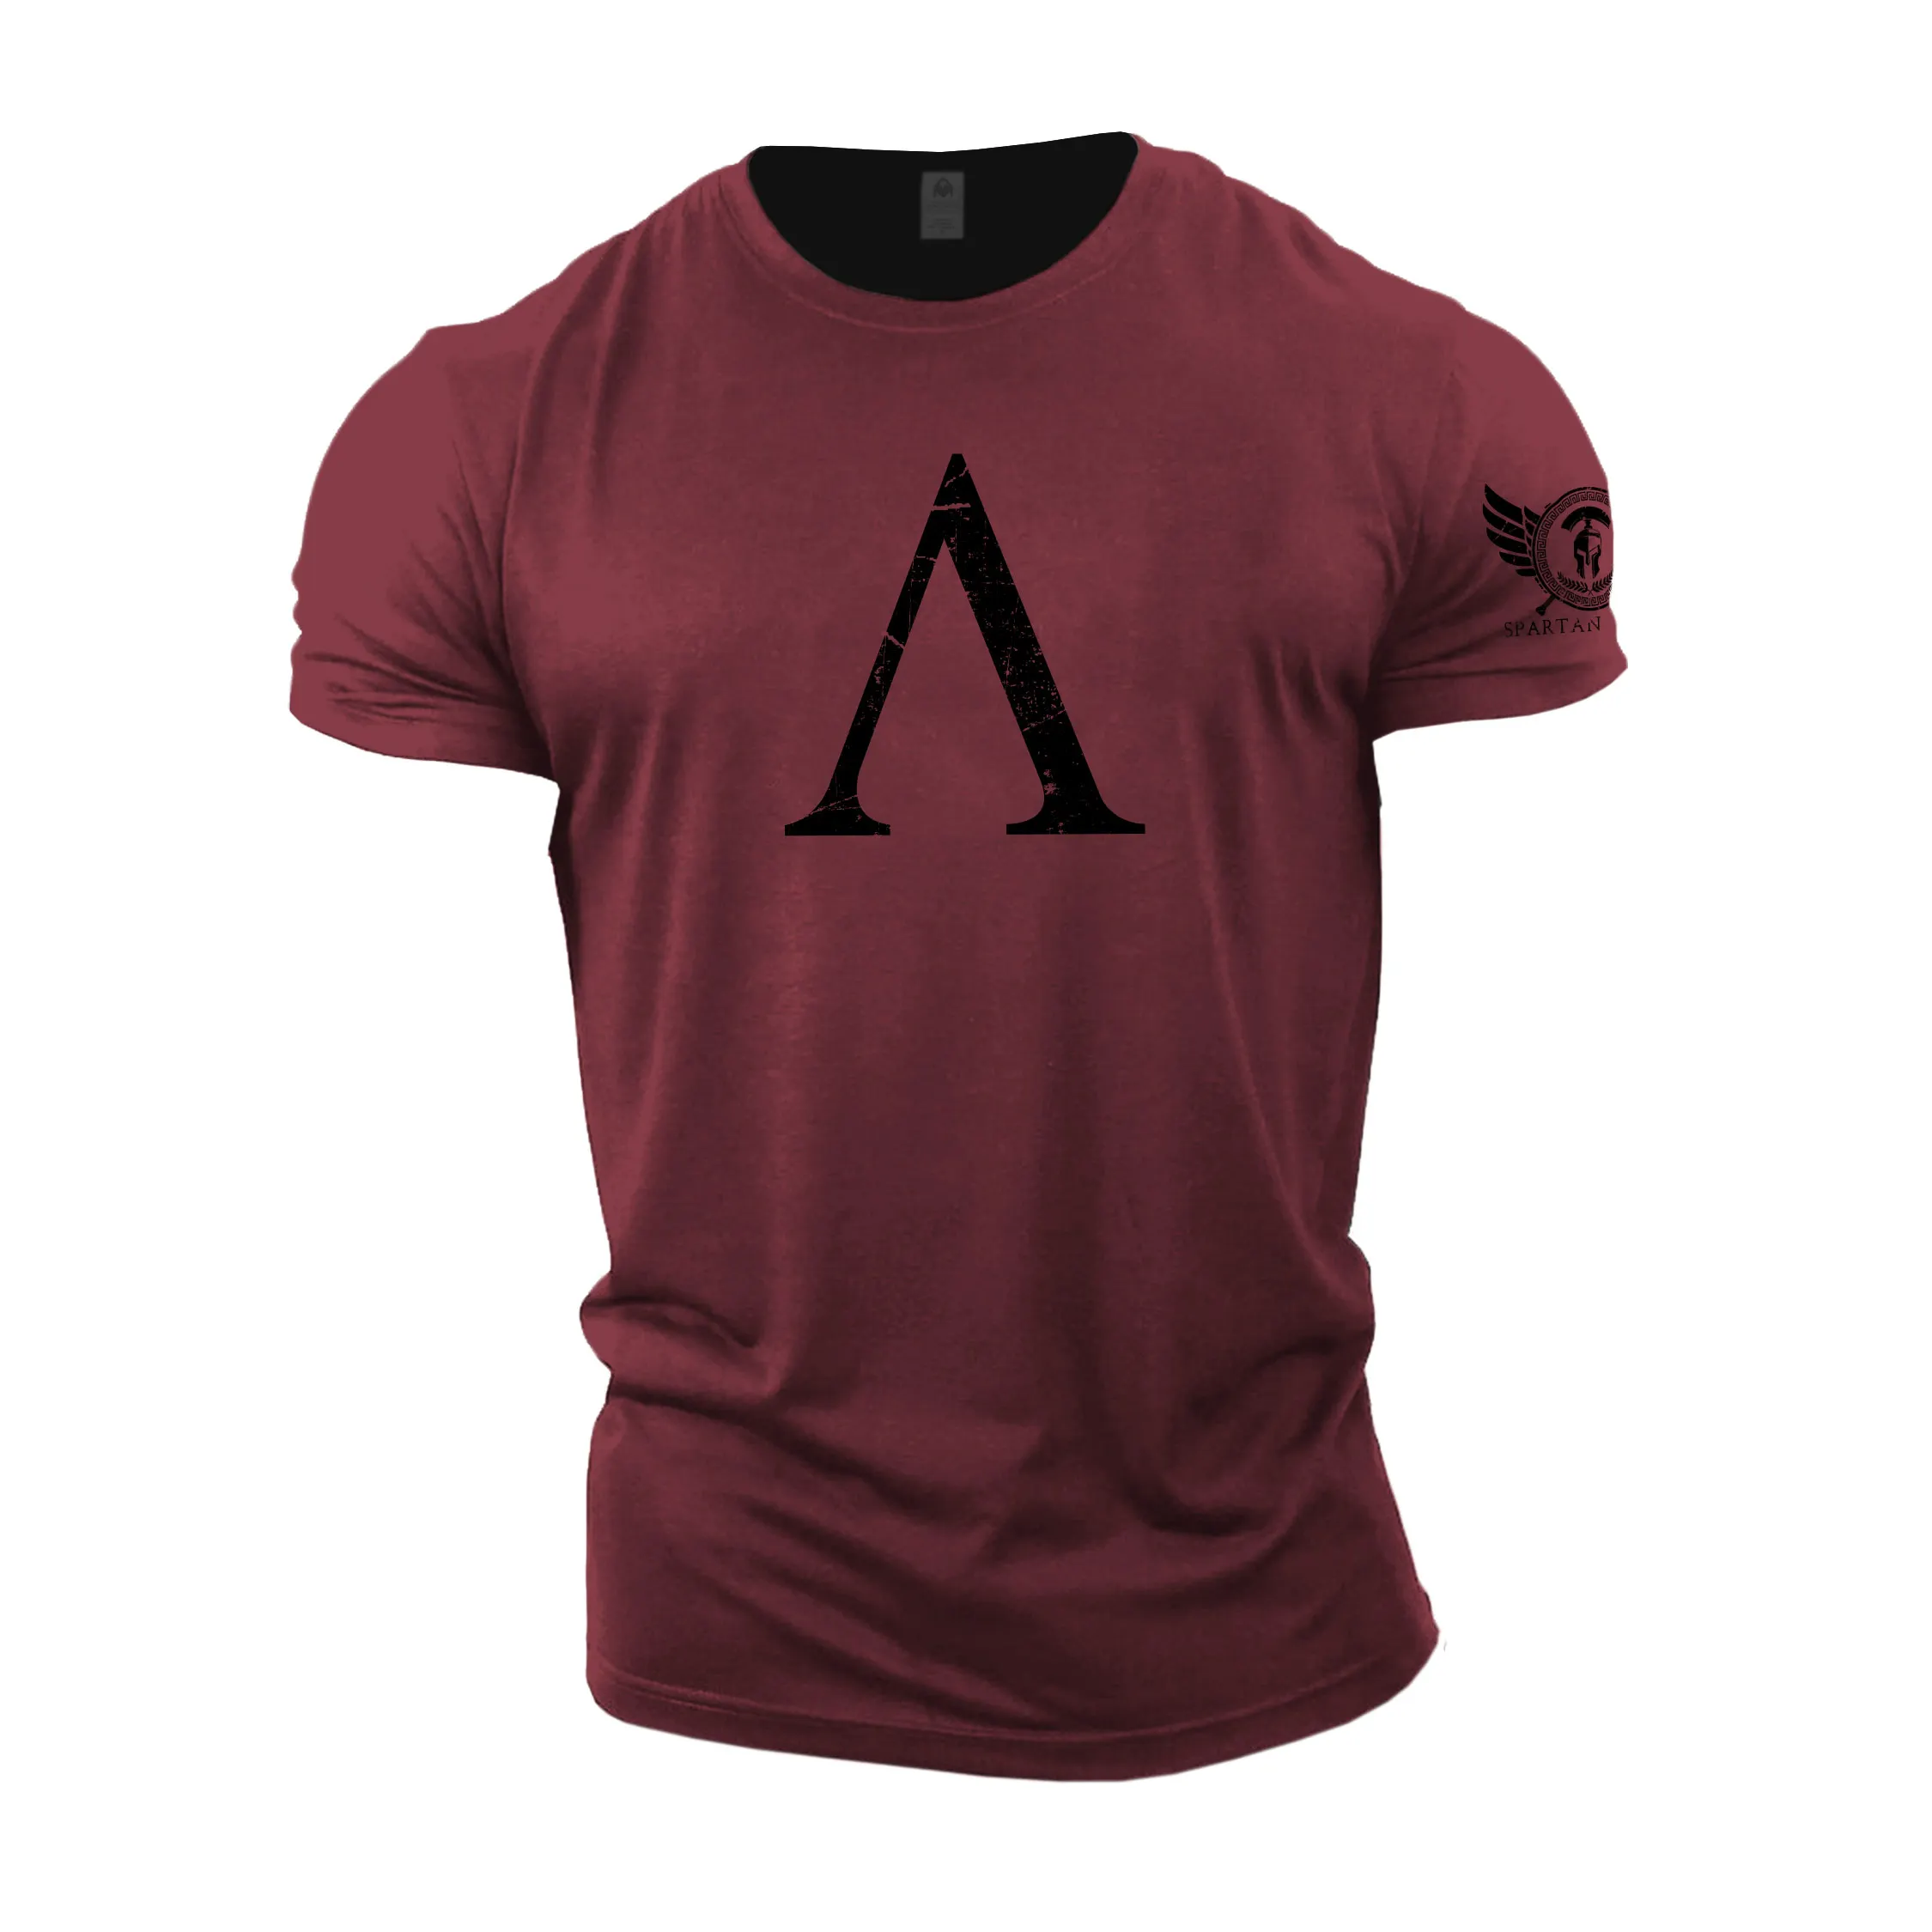 

Футболка мужская оверсайз в стиле хип-хоп, винтажная рубашка с спартанским узором, топ с короткими рукавами и надписью A Print, повседневный свитшот с круглым вырезом, красный, на лето